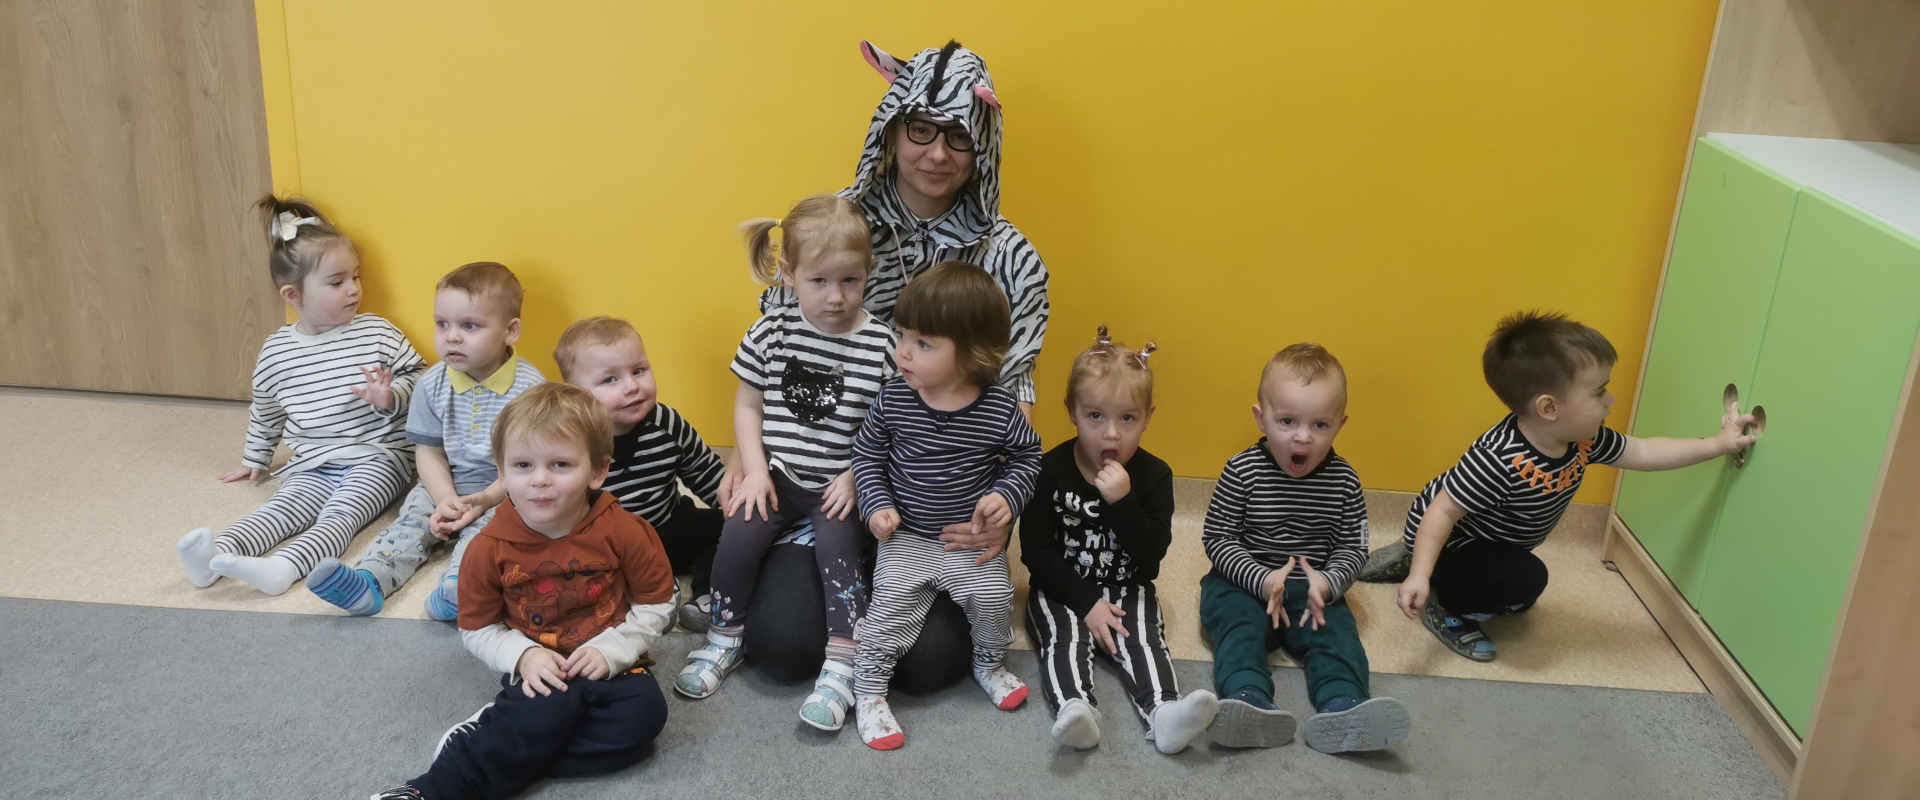 Zdjęcie grupowe dzieci z kobietą przebraną w stroju zebry